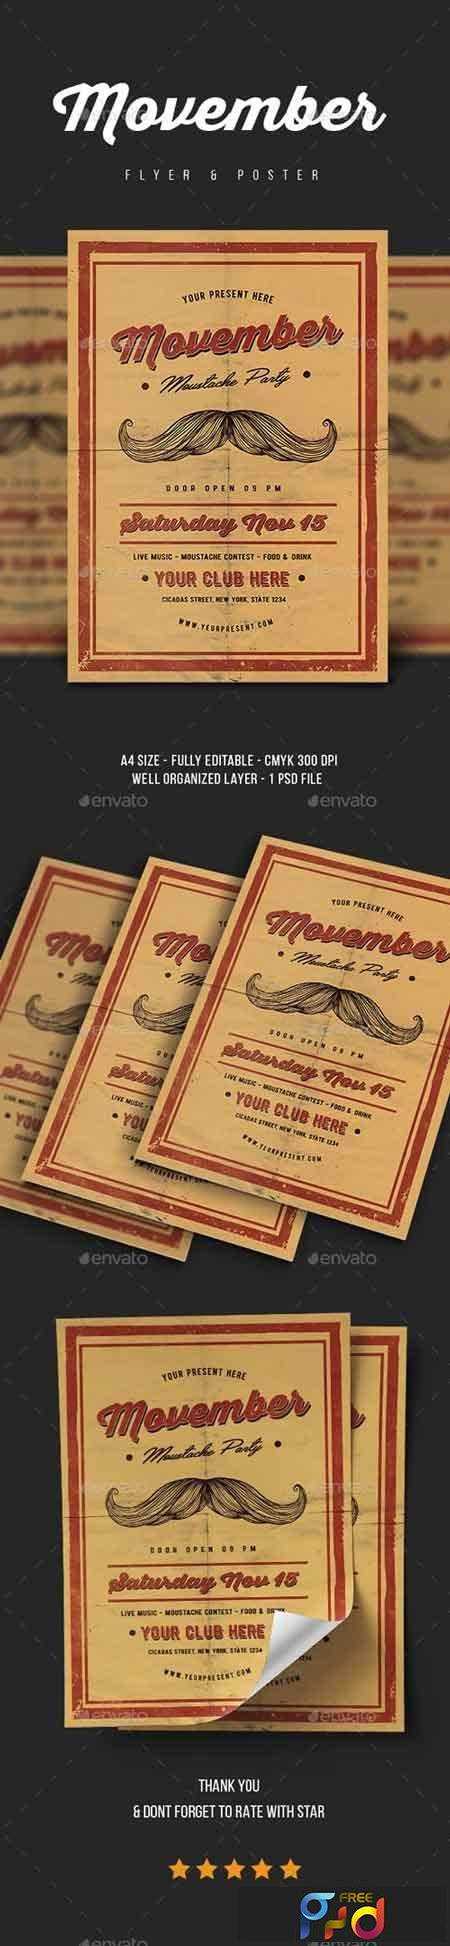 1707129 Movember Flyer Vol.2 20882870 1